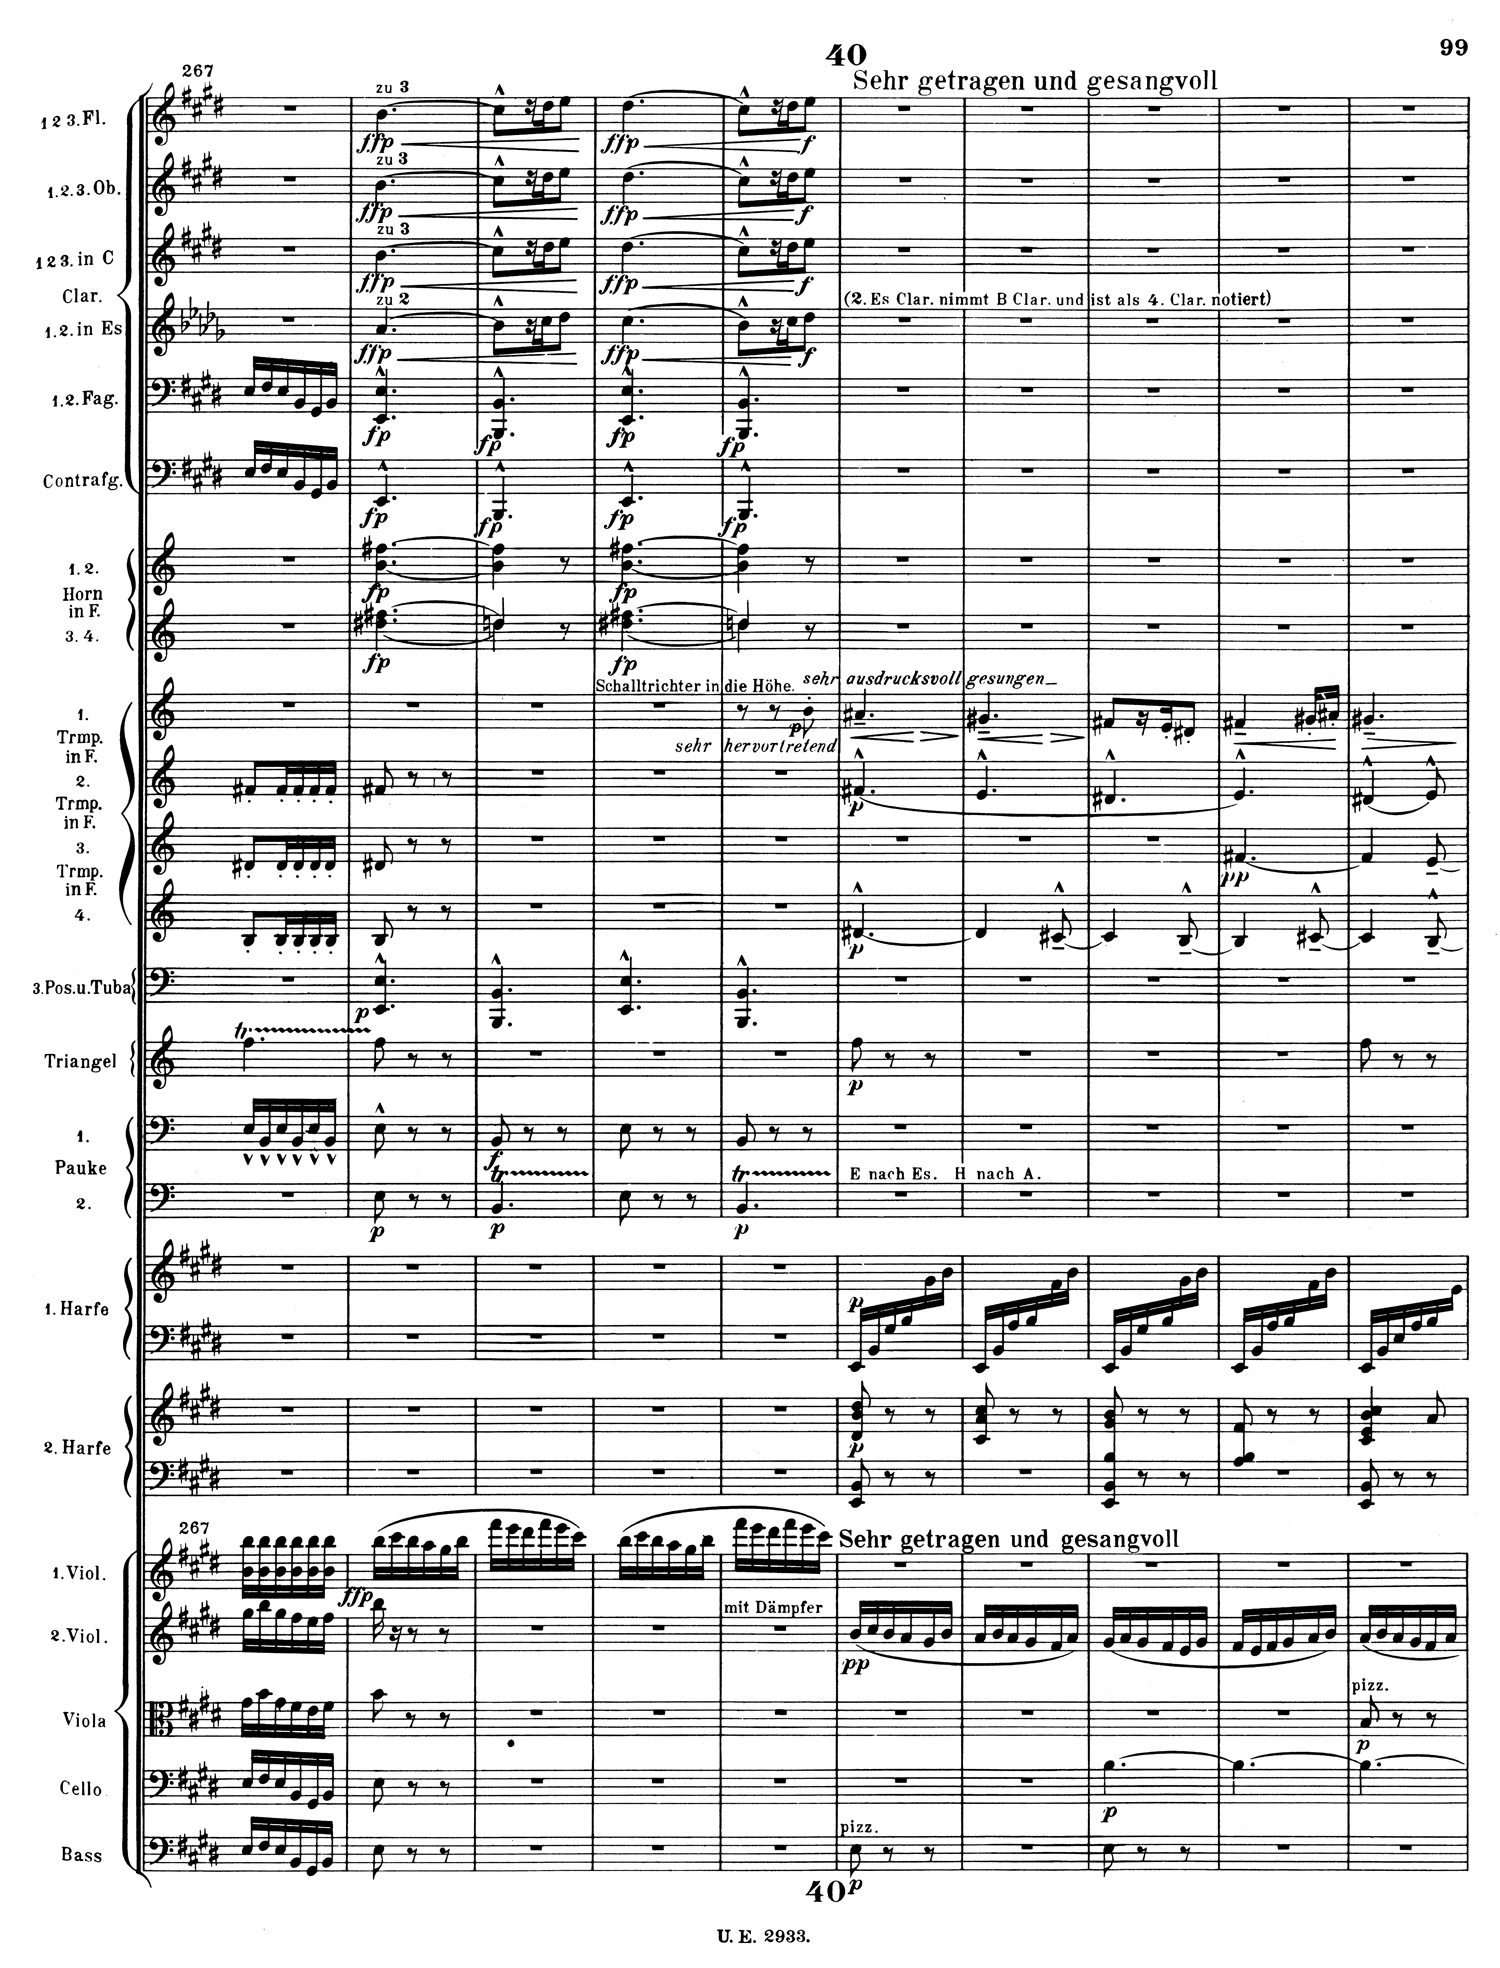 Mahler 2 Score 6.jpg